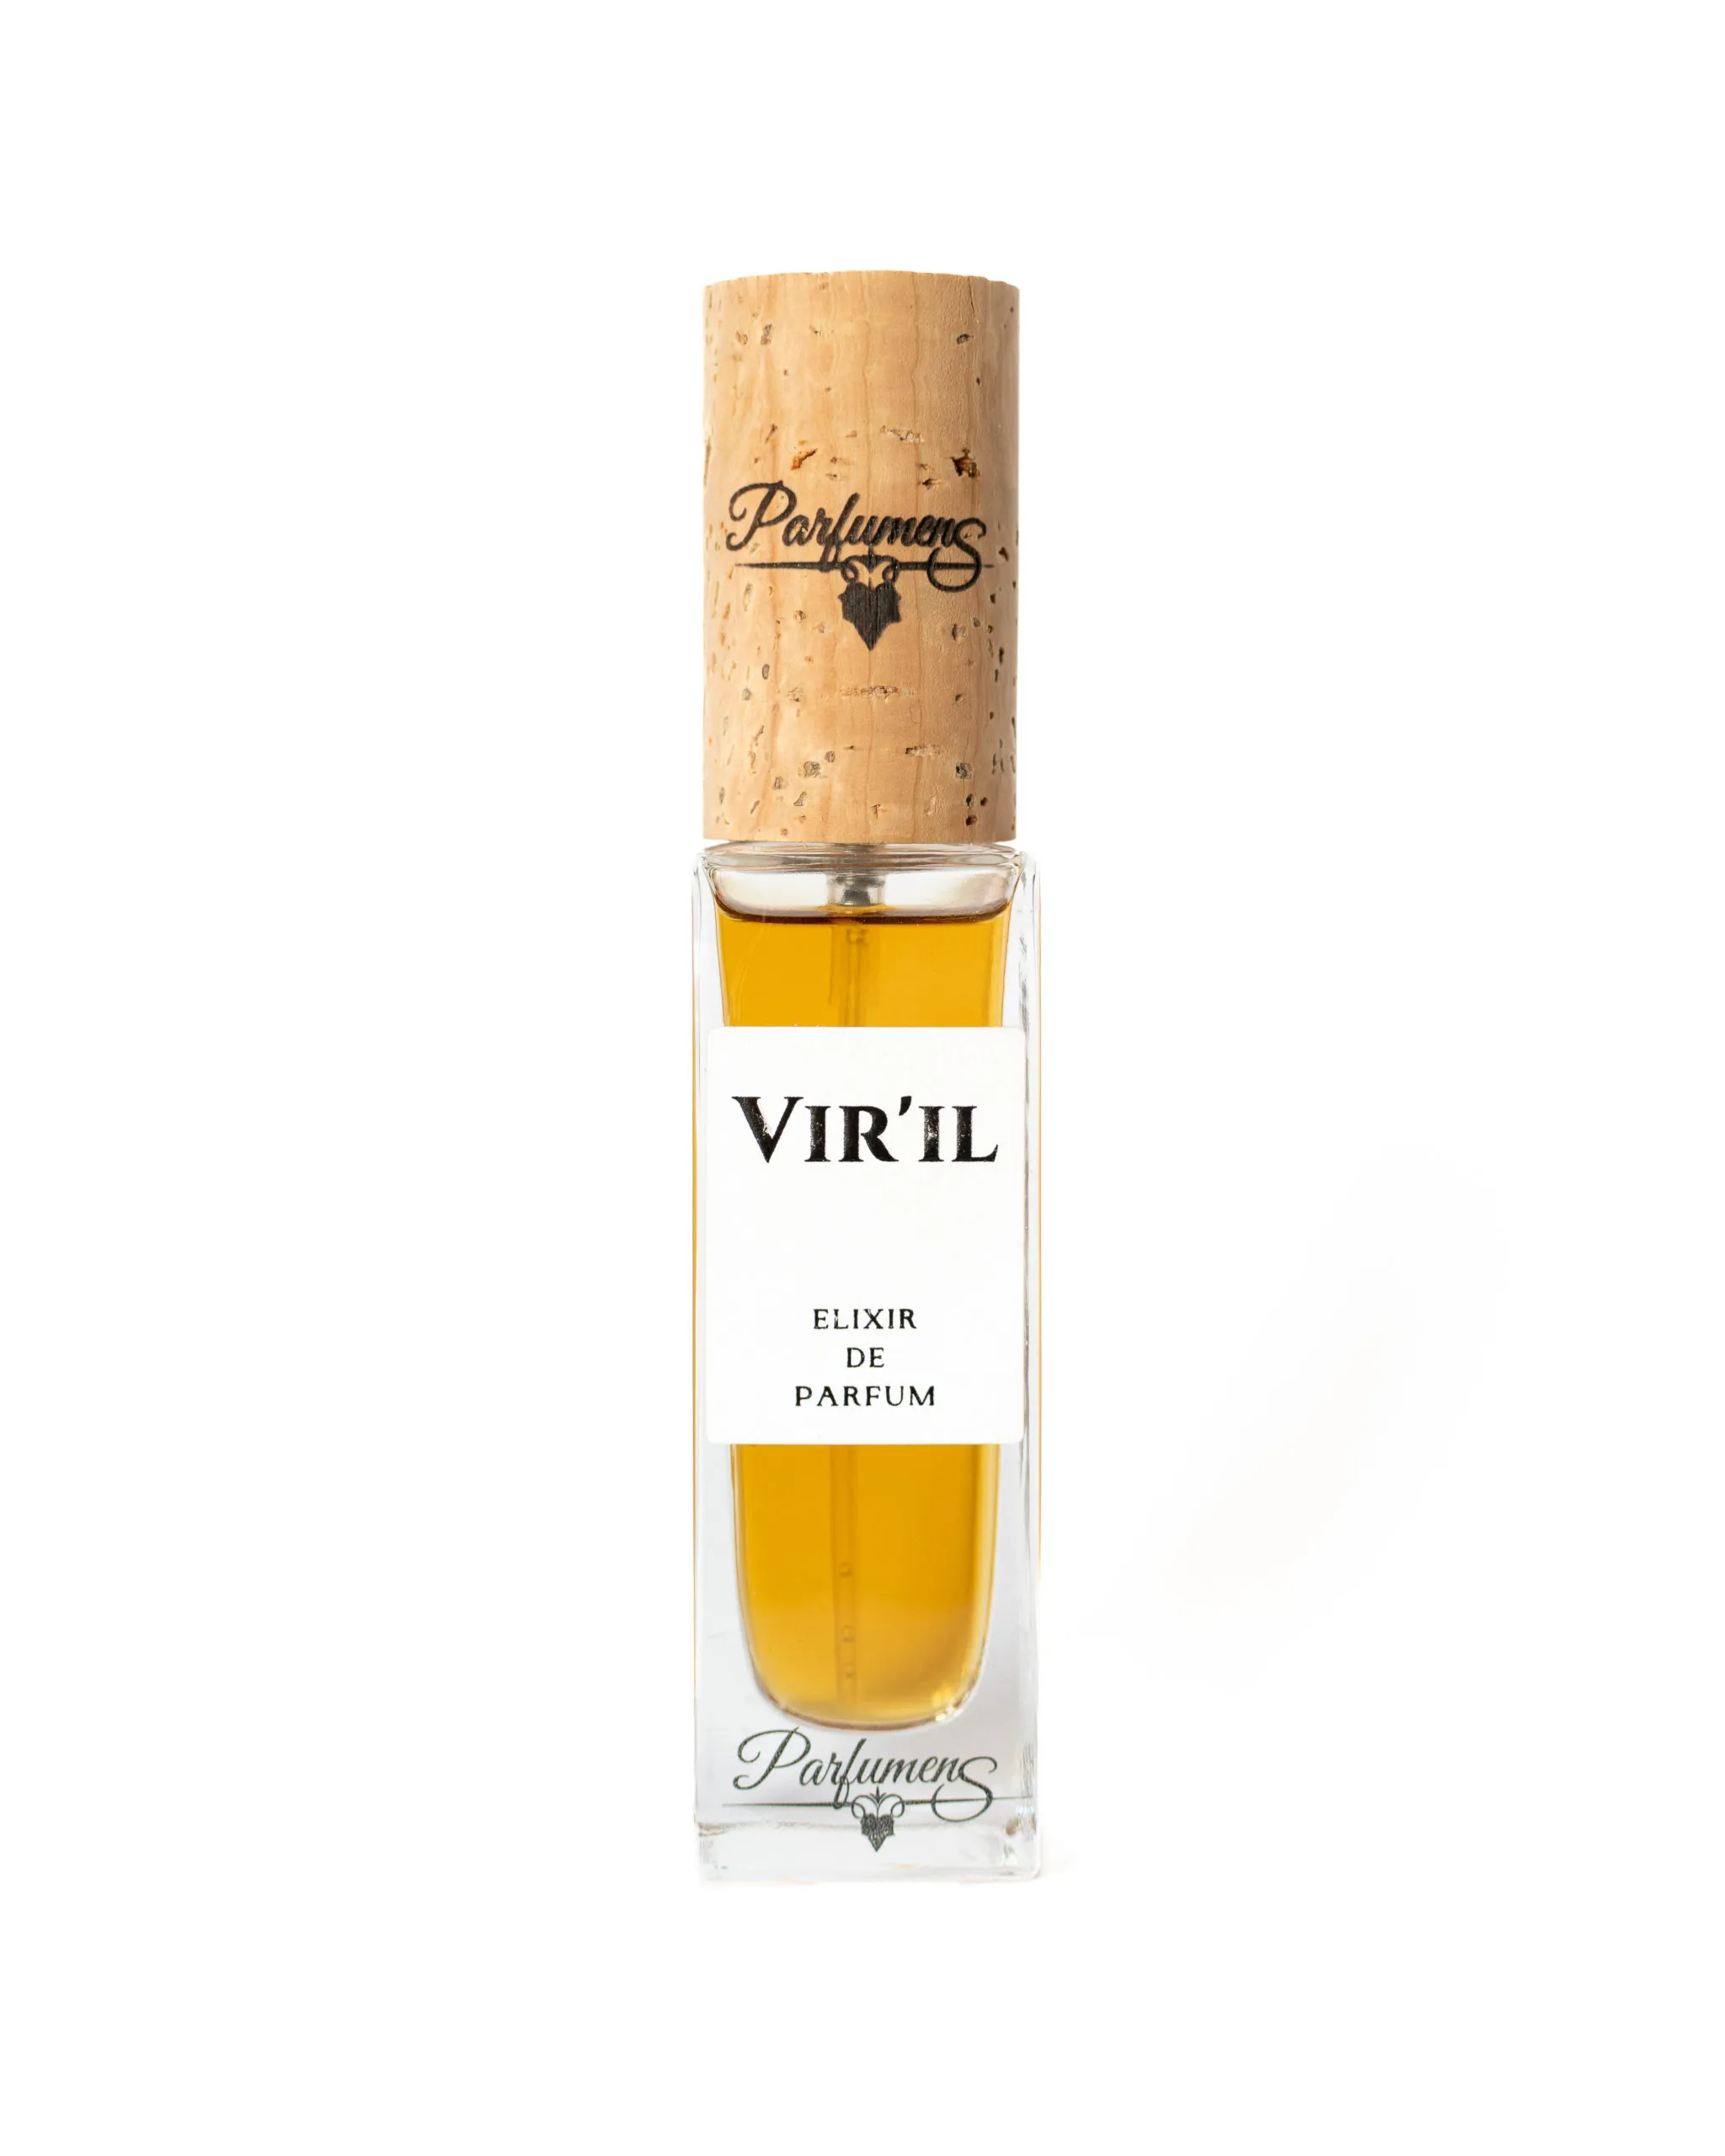 Parfum pour homme bio et 100% naturel "VIR'IL" format 30ml